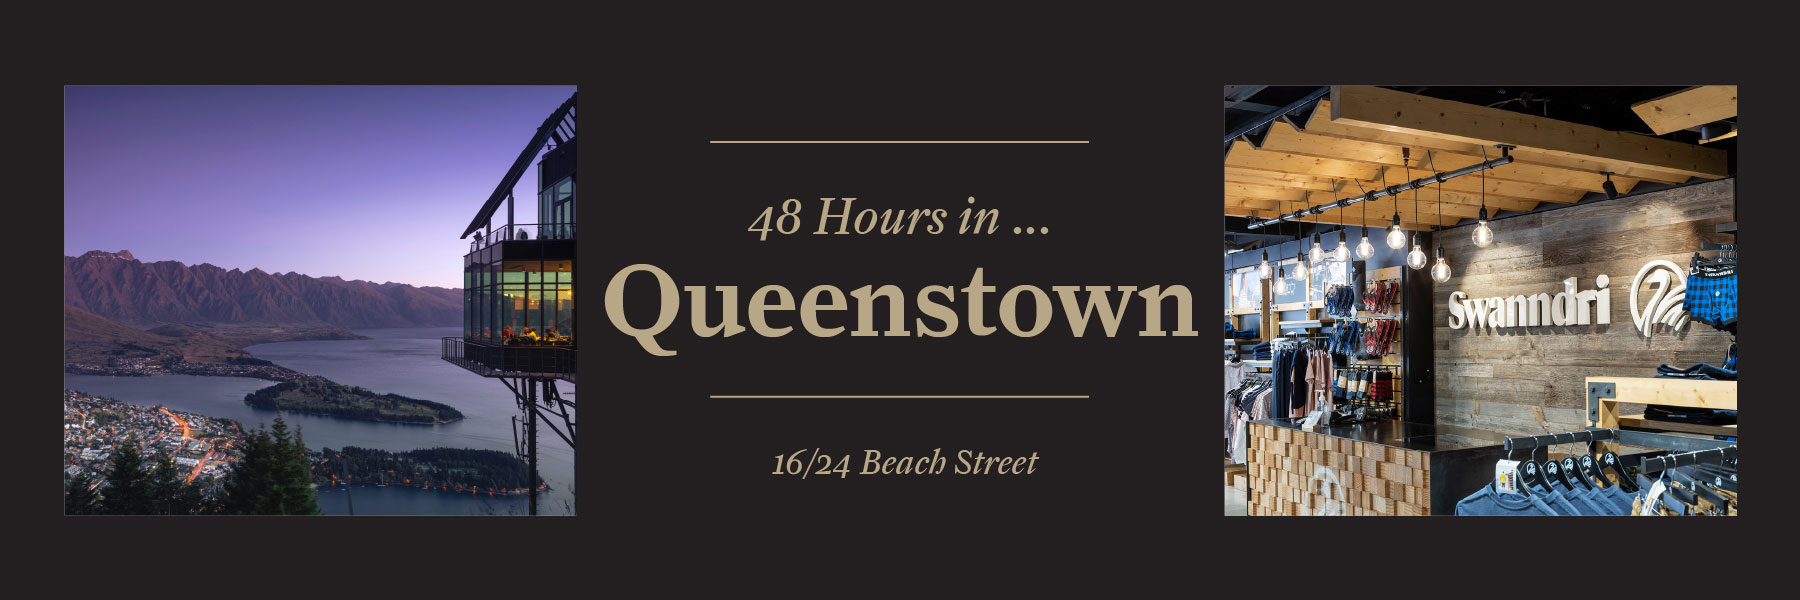 48 hours in Queenstown